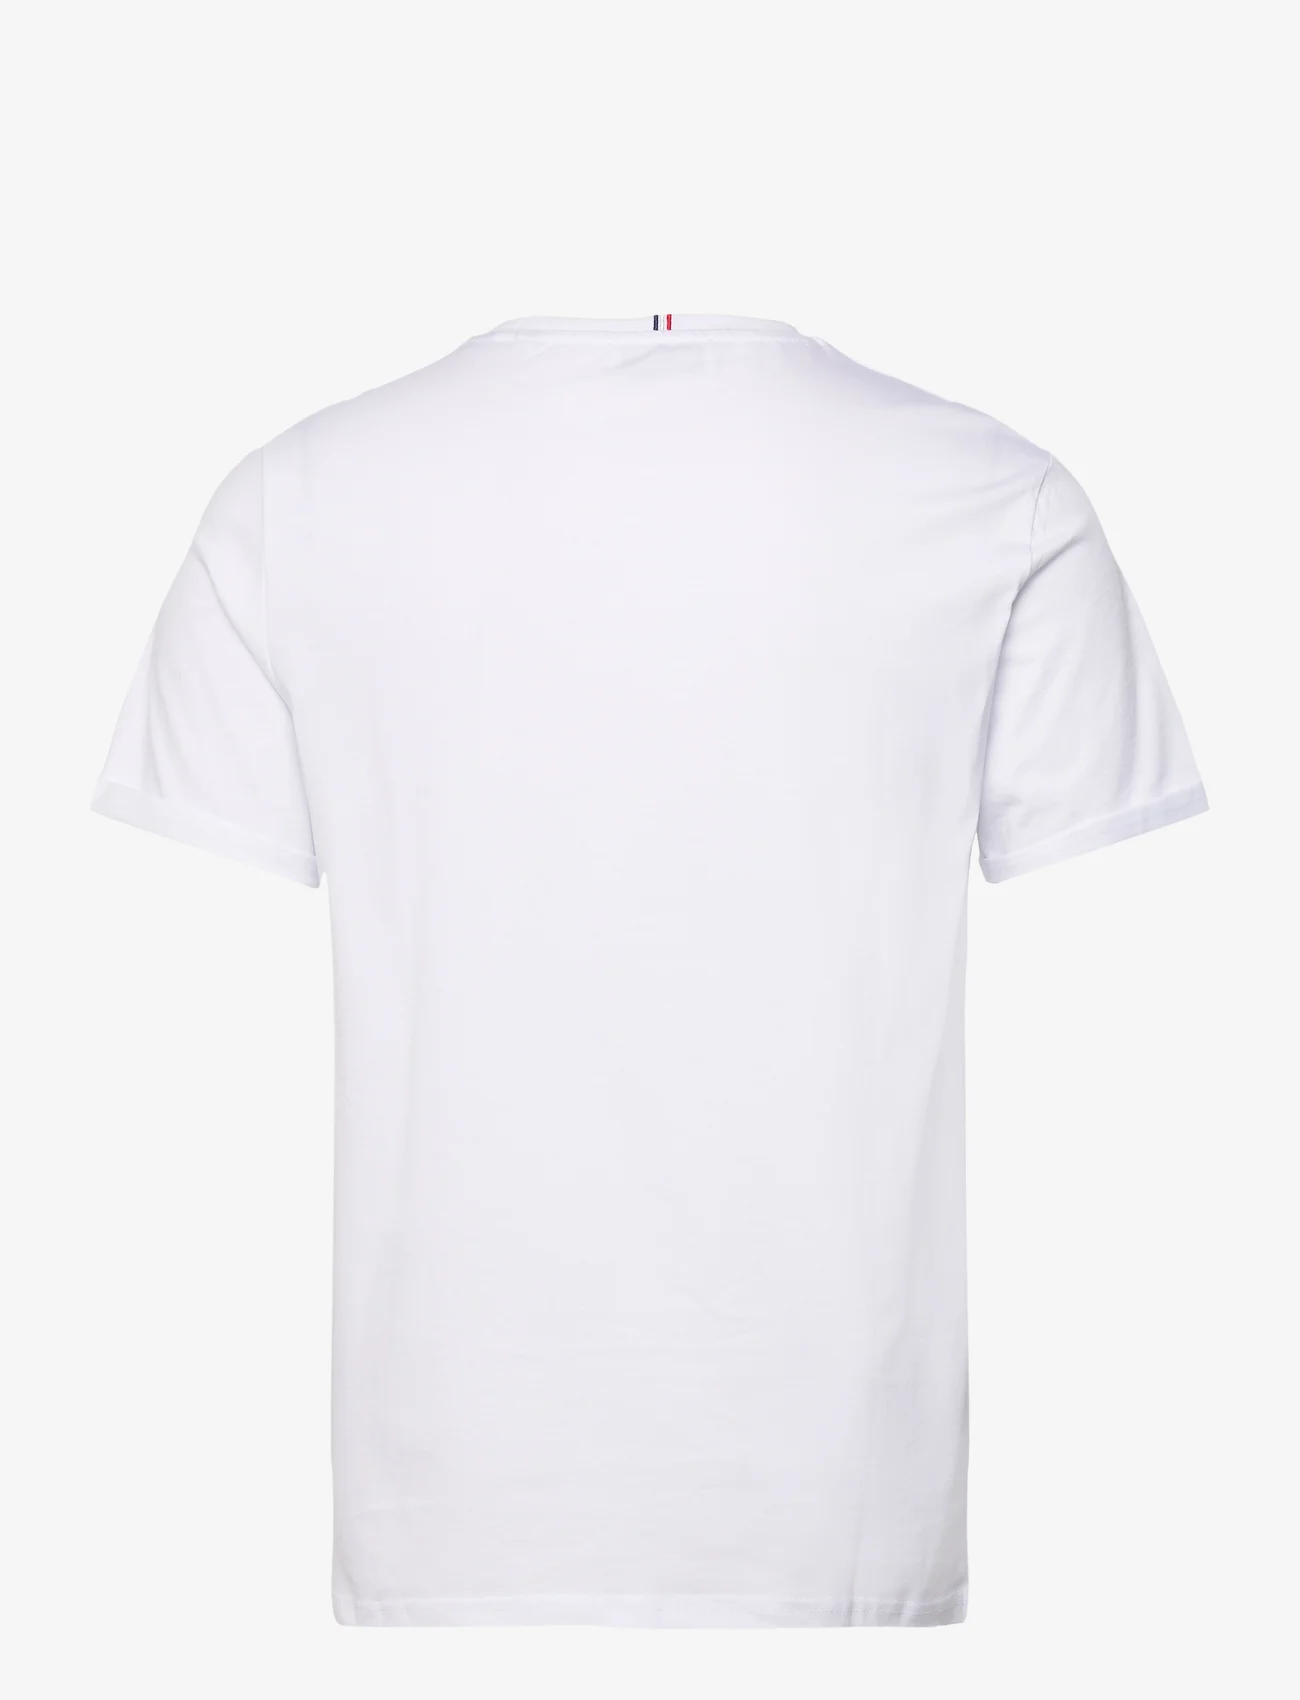 Les Deux - Les Deux II T-Shirt 2.0 - ziemeļvalstu stils - white/dark copper - 1